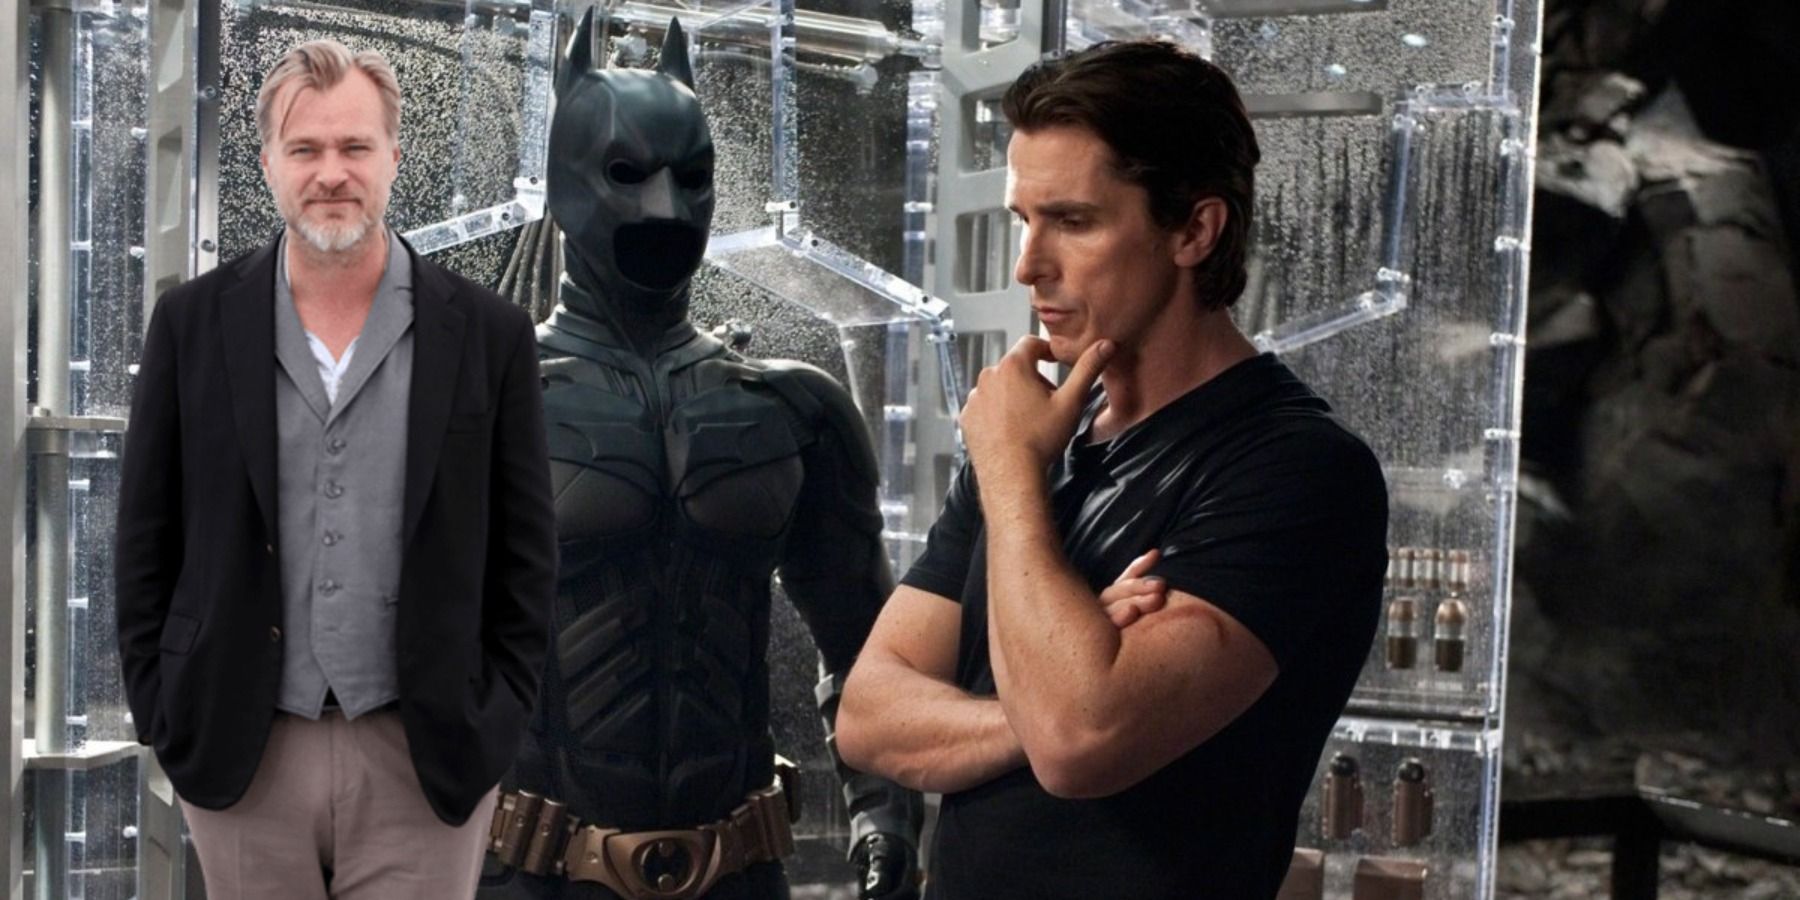 Christian Bale voltaria como Batman novamente se Christopher Nolan perguntasse